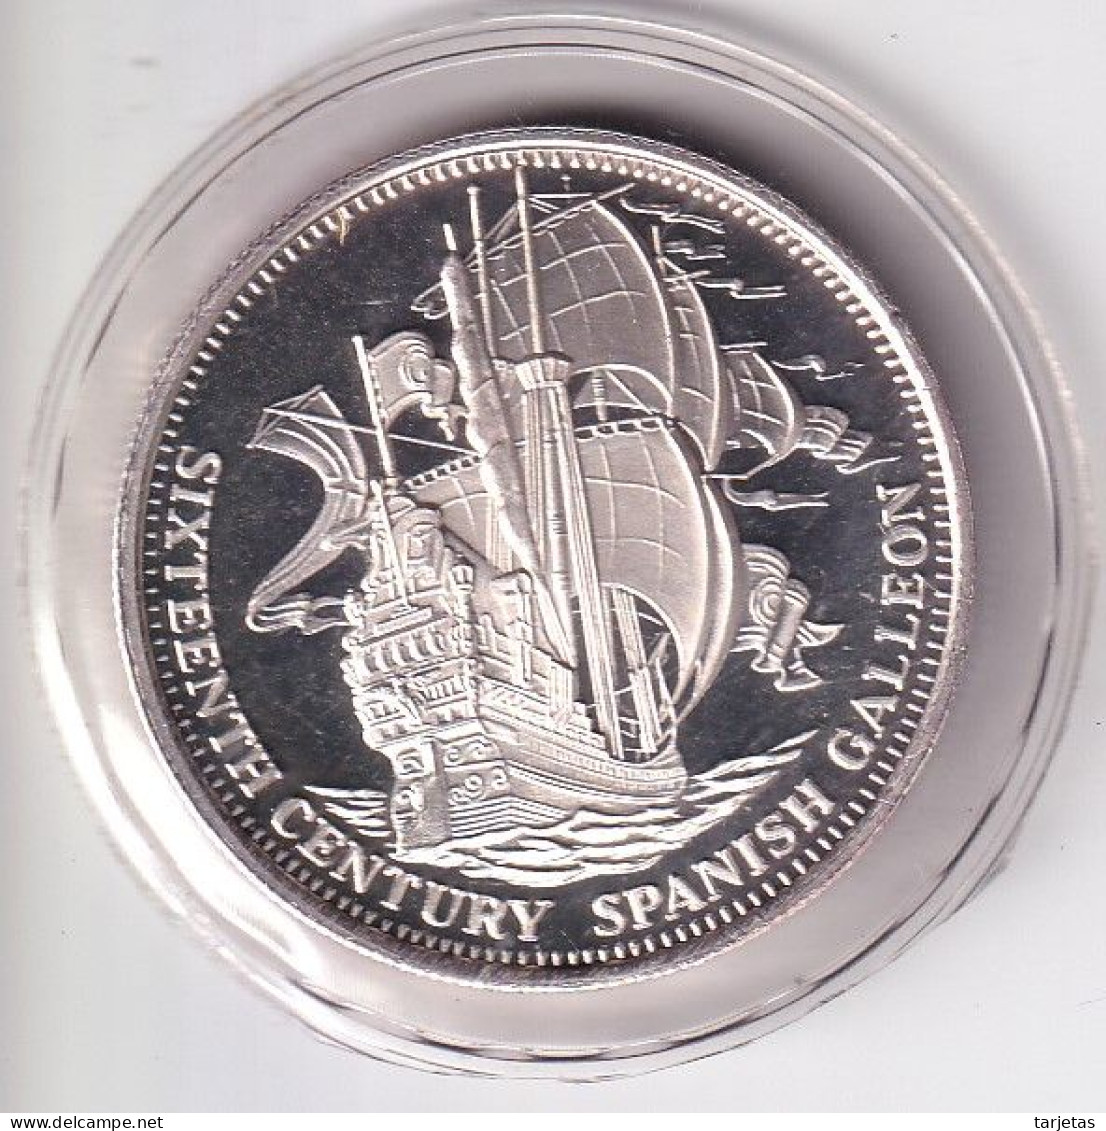 MONEDA DE PLATA DE ESTADOS UNIDOS DE 1 ONZA DE SIXTEENTH VENTURY SPANISH CALLEON (BARCO-SHIP) - Gedenkmünzen